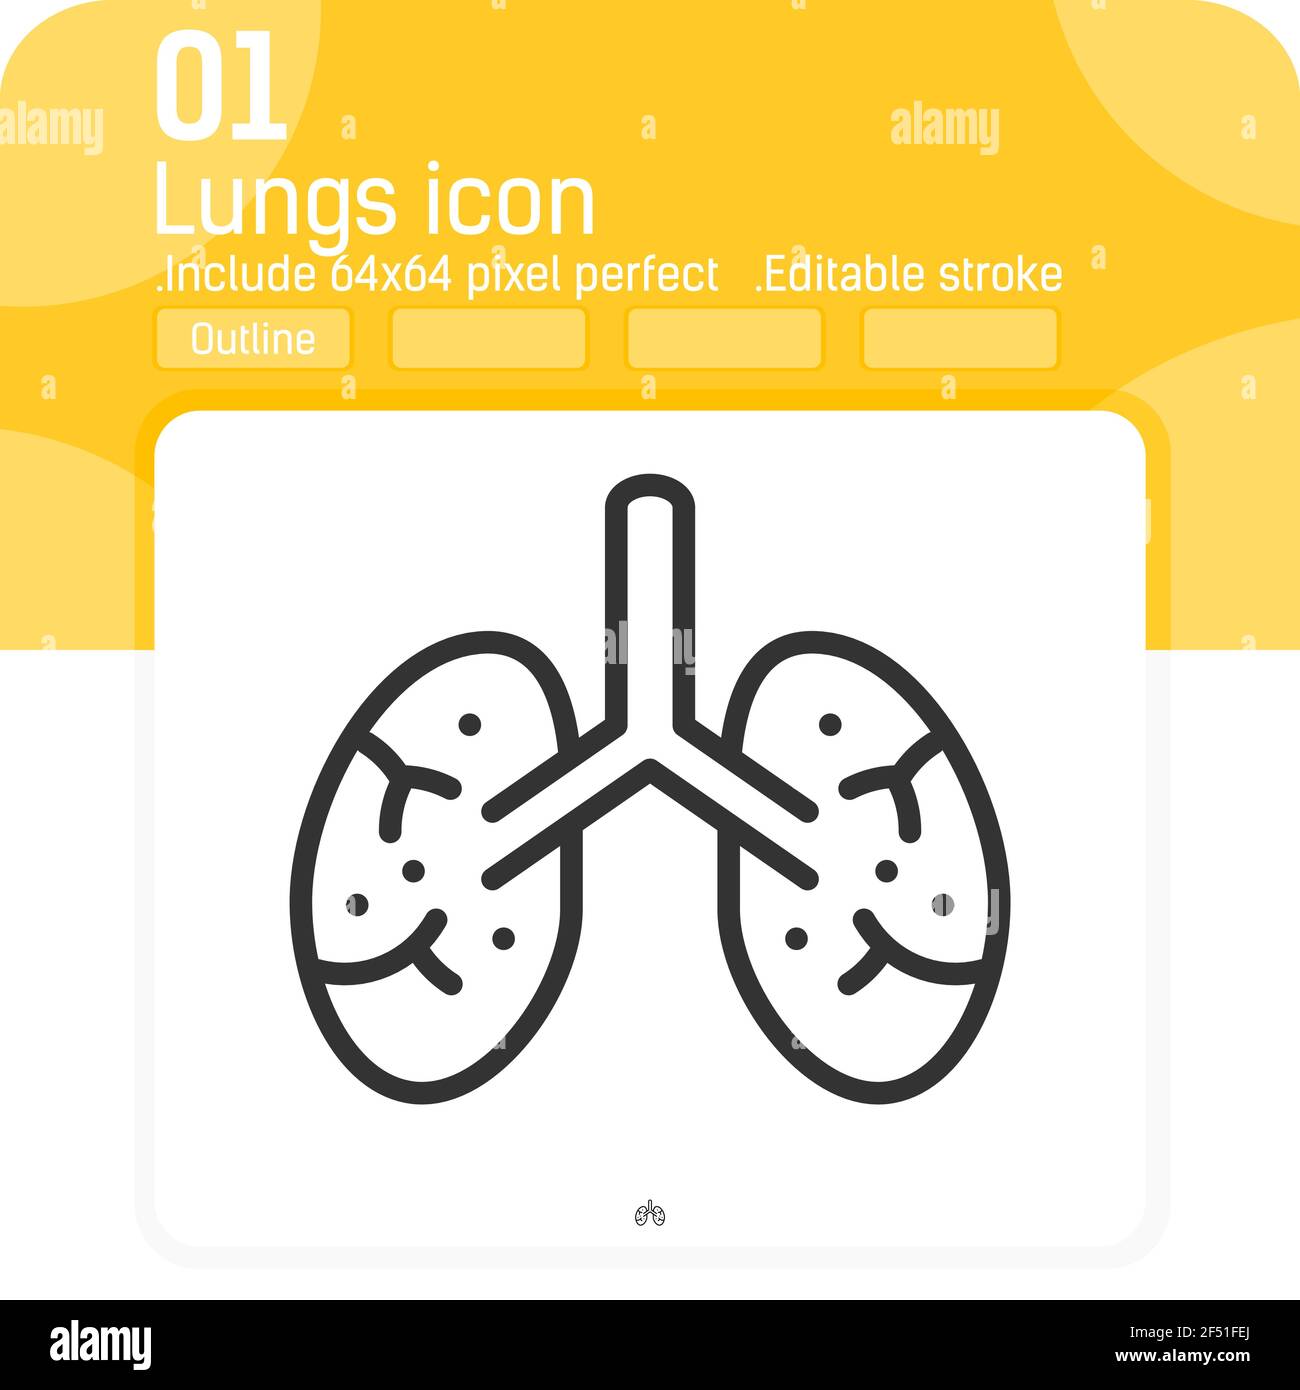 Icona del vettore dei polmoni con lo stile del contorno isolato su sfondo bianco. Illustrazione icona di simbolo lineare sottile elemento trendy per ui, ux, web, organi, logo, Illustrazione Vettoriale